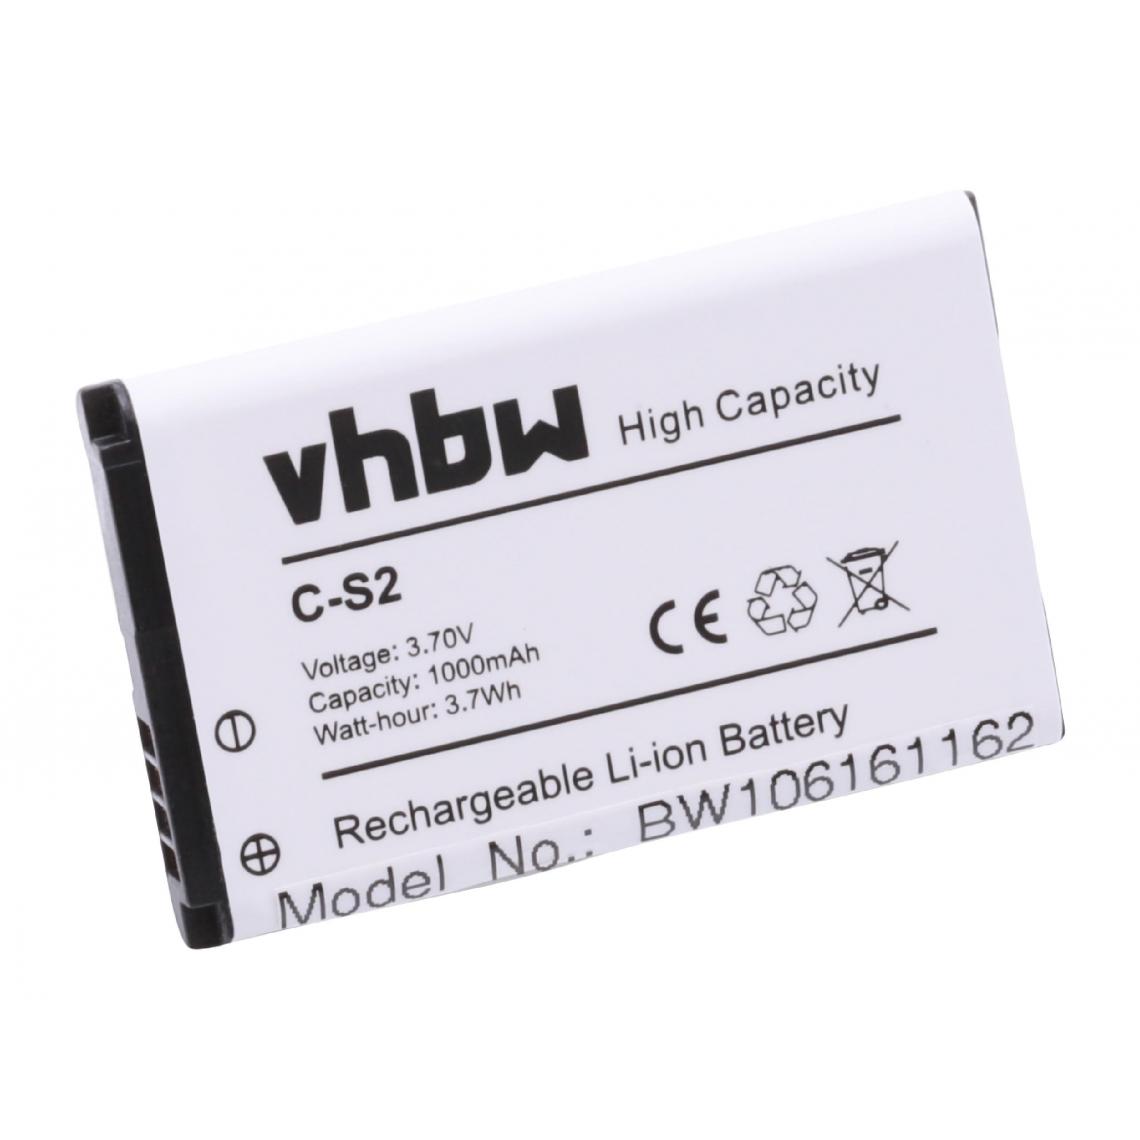 Vhbw - vhbw Batterie remplacement pour Blackberry ACC-06860-304, BAT-06860-003, BAT-06860-009, CS2, C-S2 pour smartphone (1000mAh, 3,7V, Li-ion) - Batterie téléphone